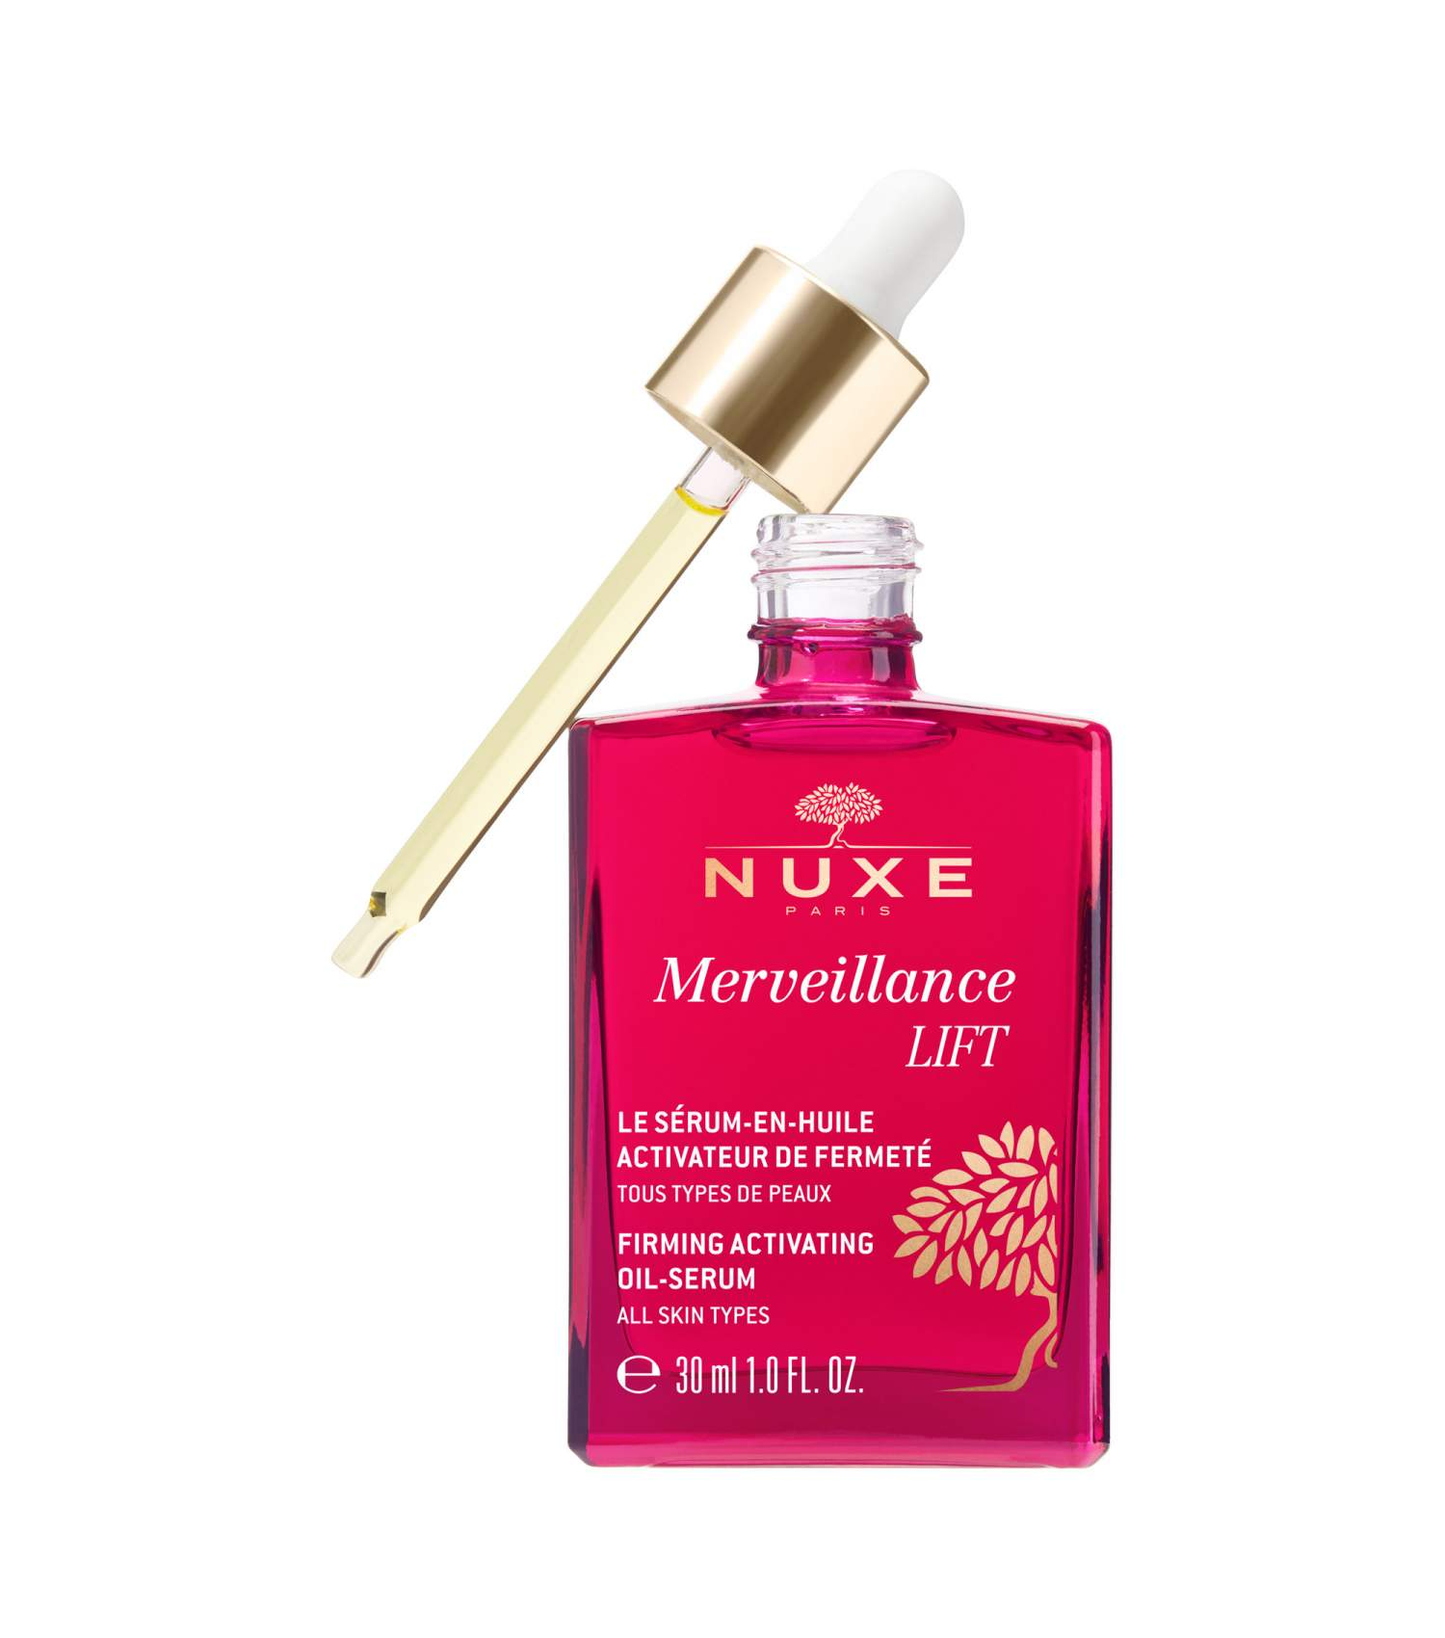 NUXE Merveillance® LIFT Firming Activating Oil-Serum